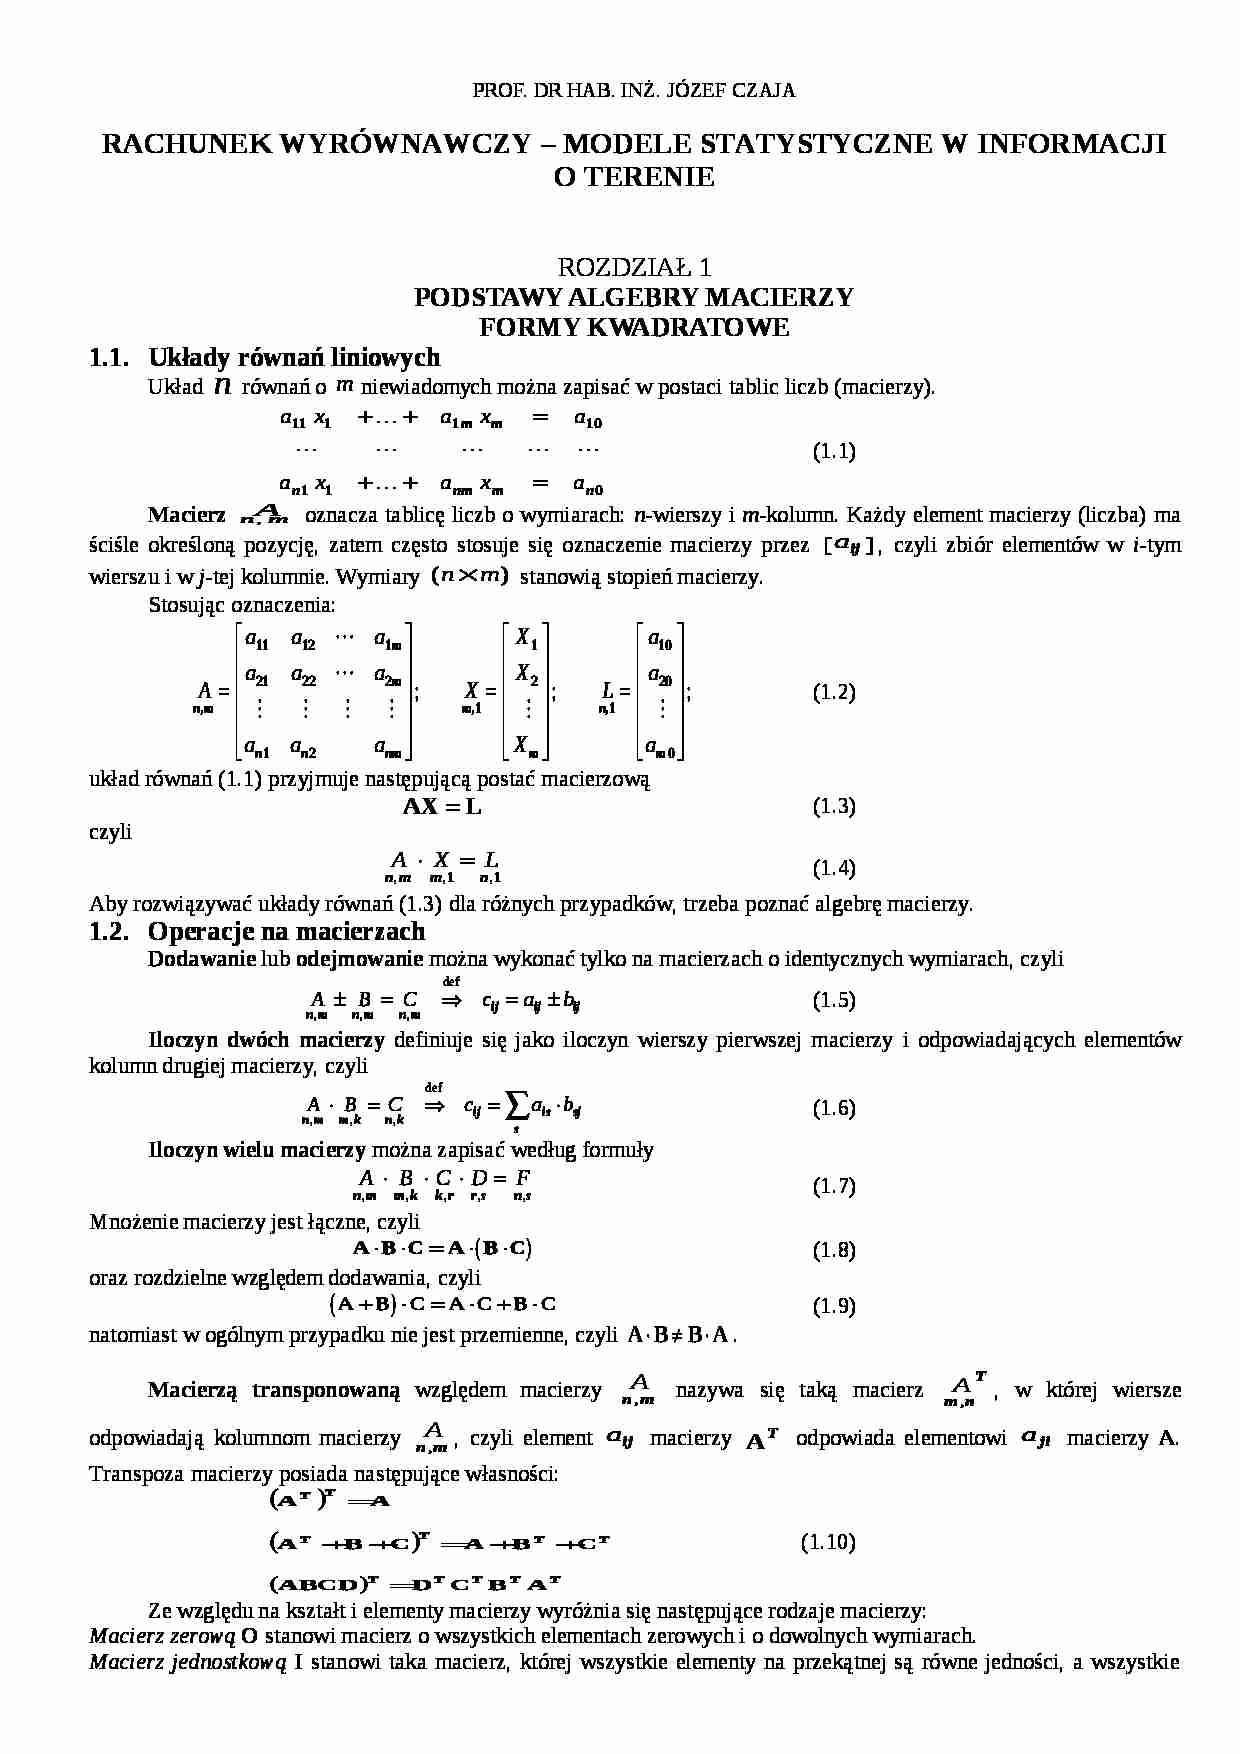 Podstawy algebry macierzy - formy kwadratowe. - strona 1